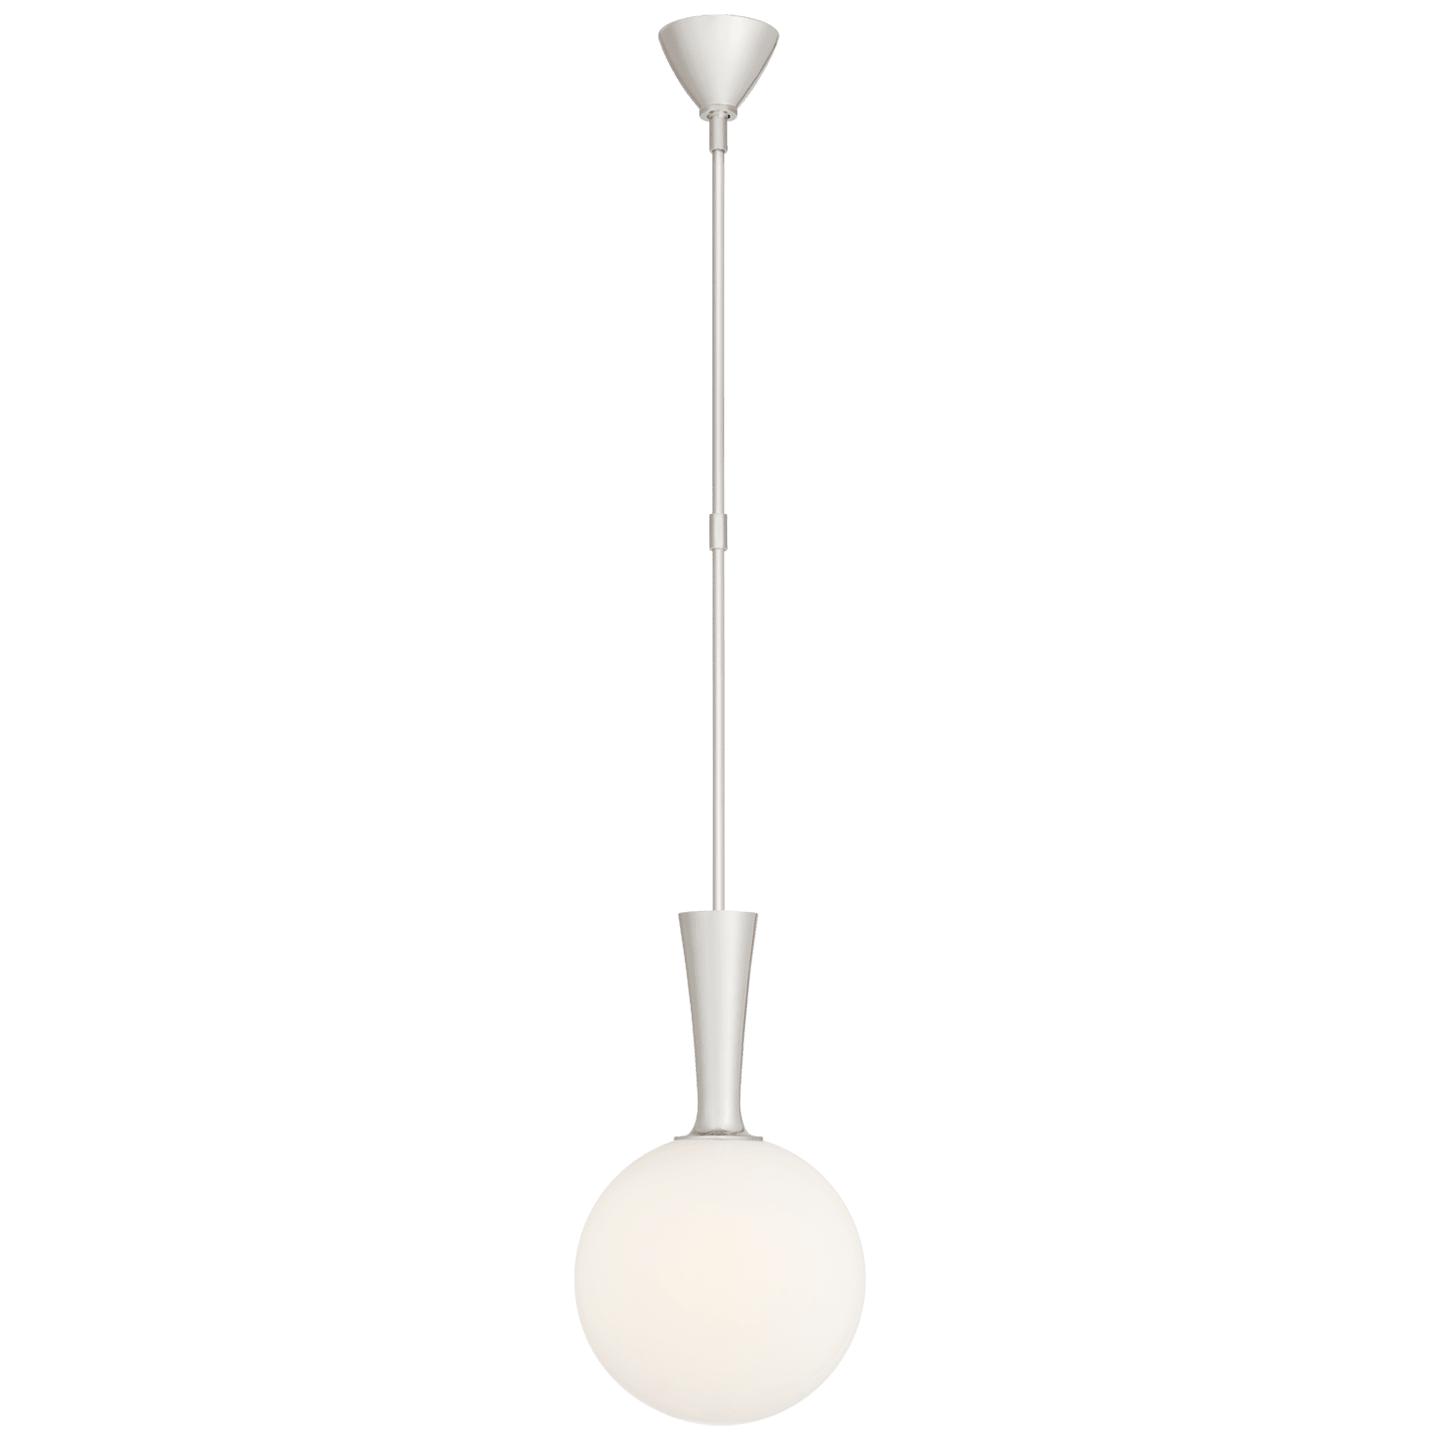 Купить Подвесной светильник Sesia Small Globe Pendant в интернет-магазине roooms.ru